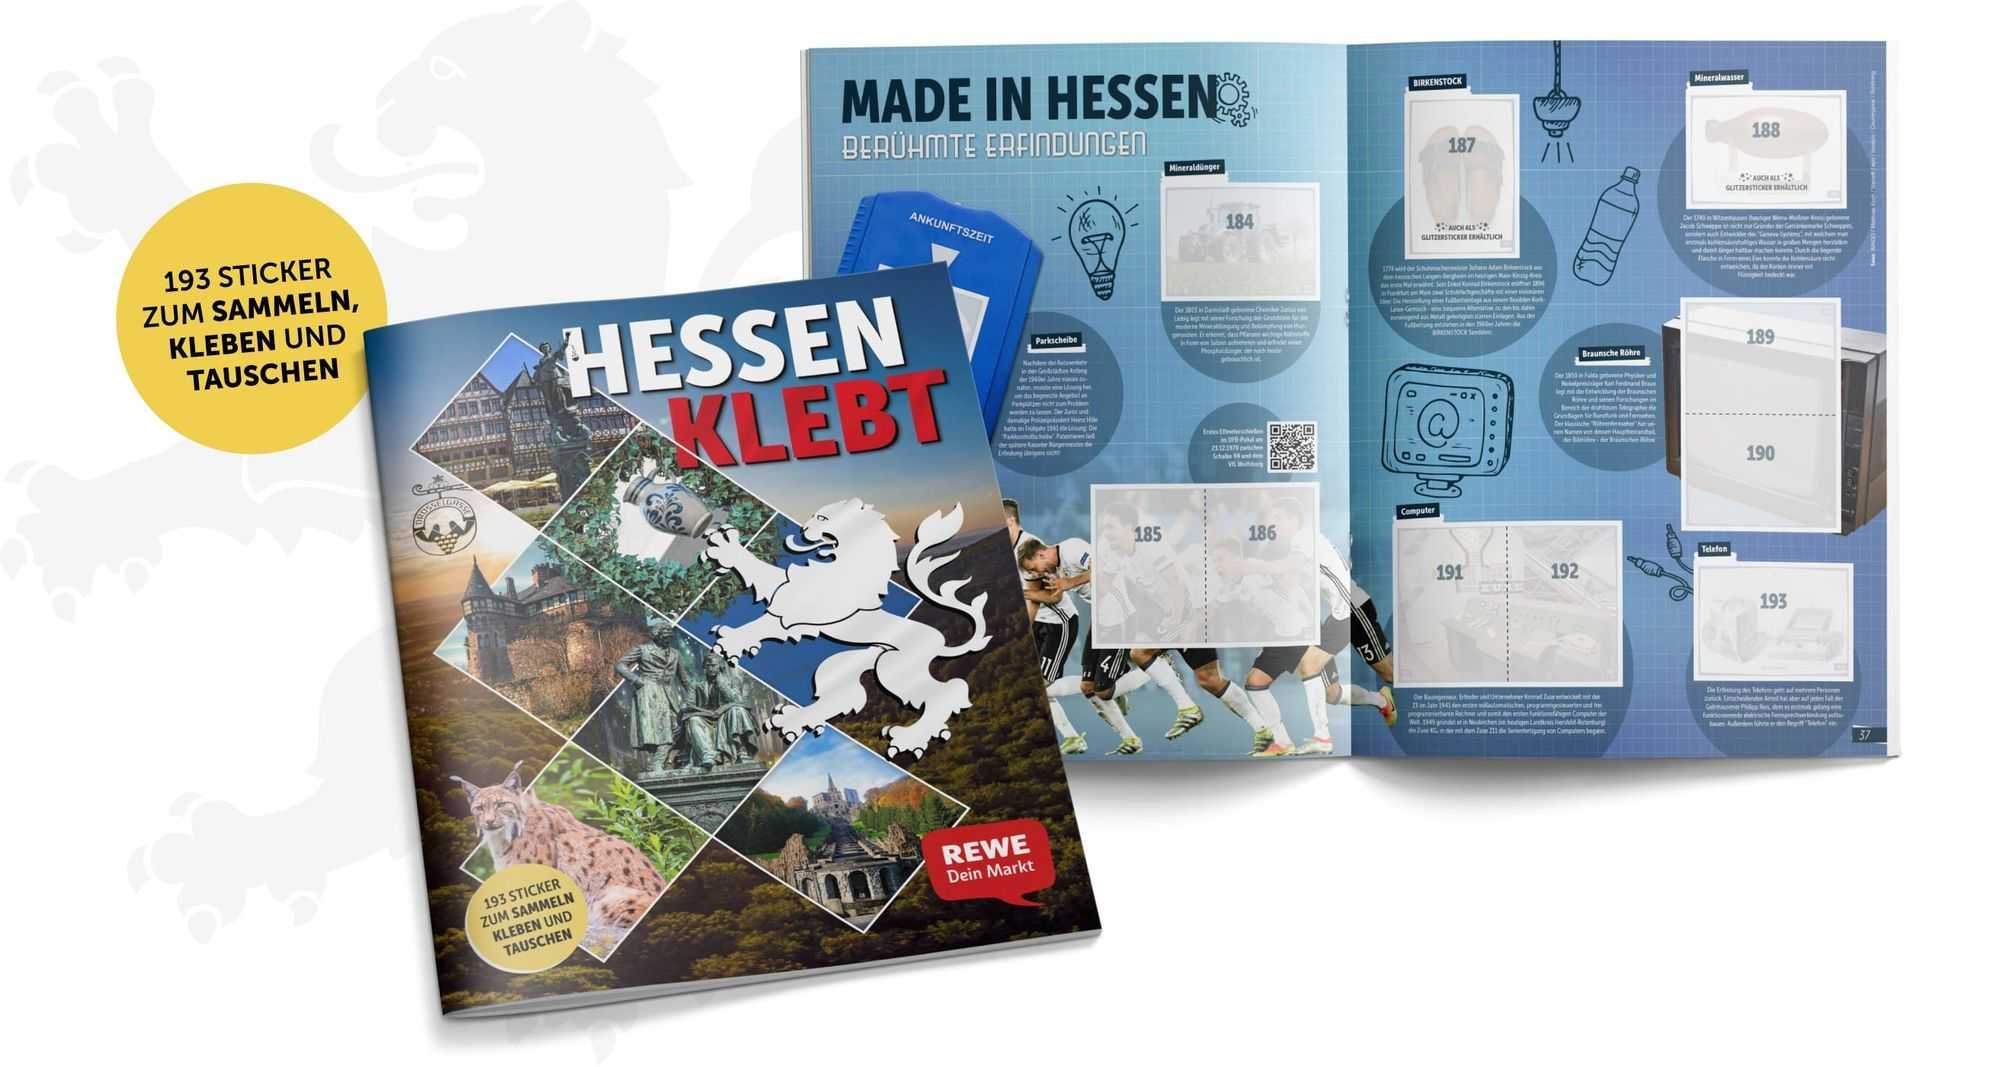 “Hessen klebt” mit dem neuen Sticker Sammelalbum von REWE und STICKERSTARS